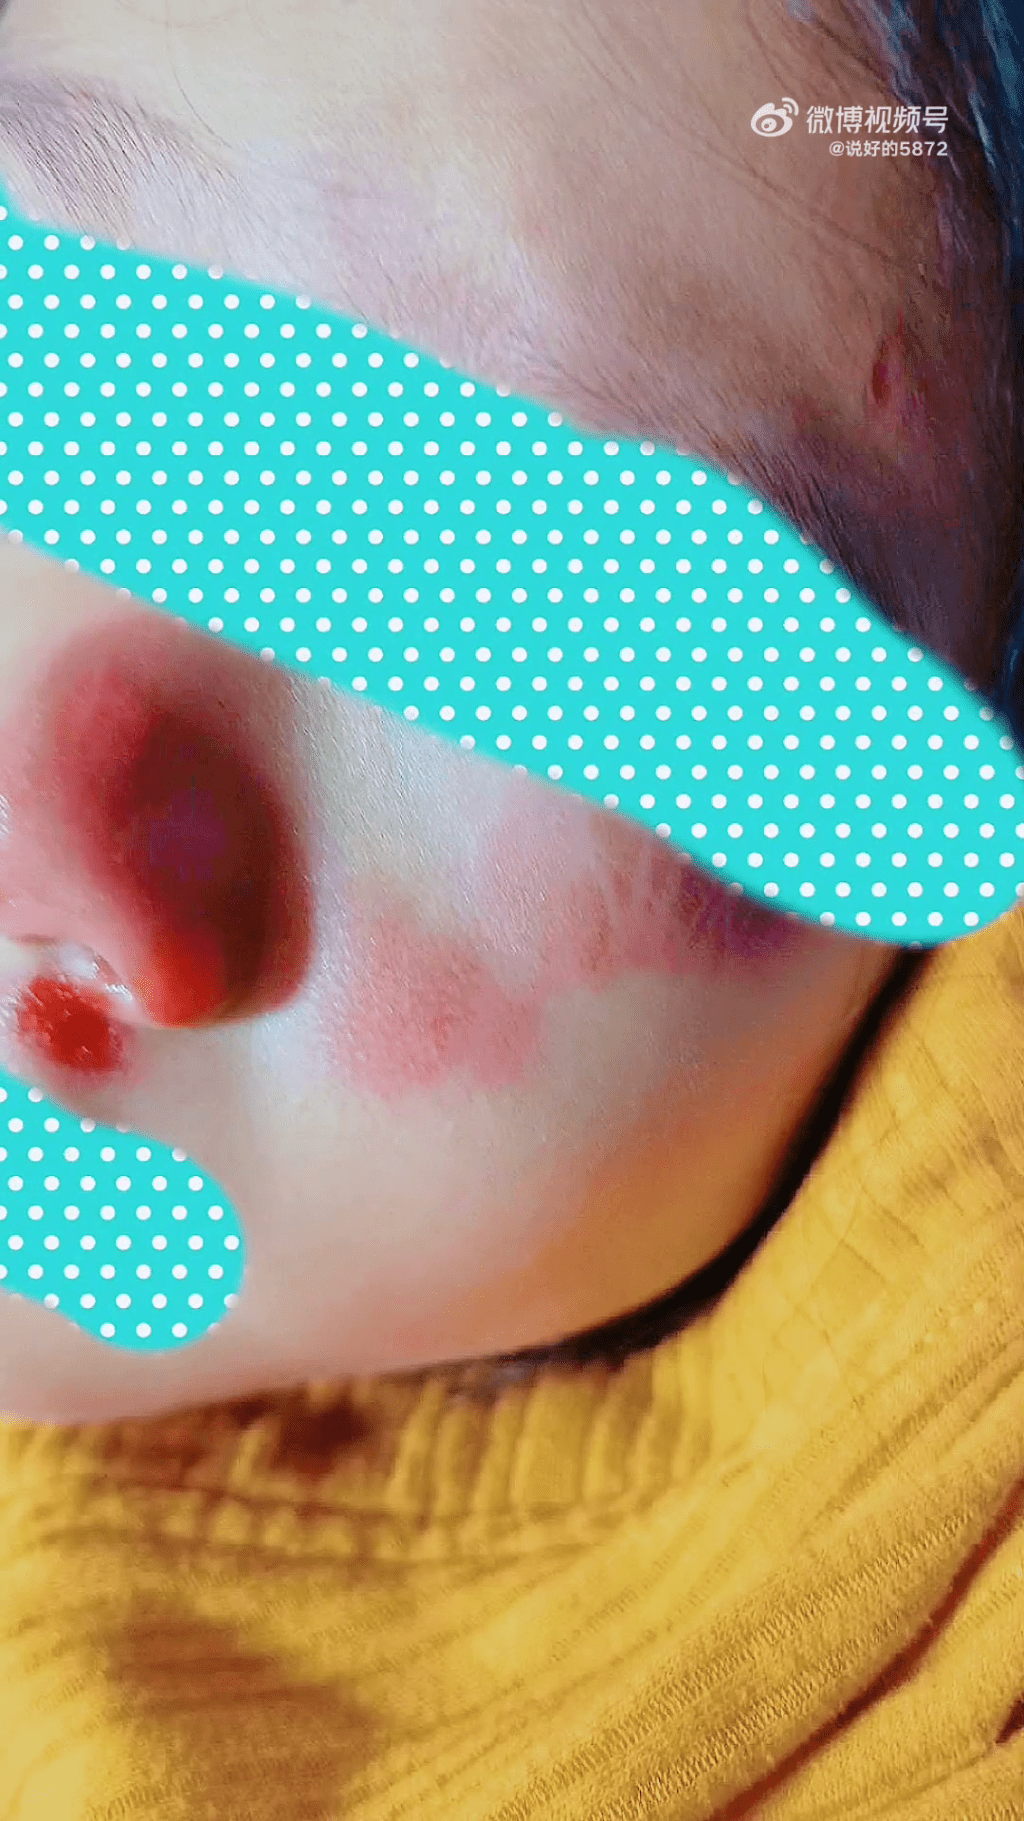 女童鼻子、額頭、左腮等面部多處受傷。網圖